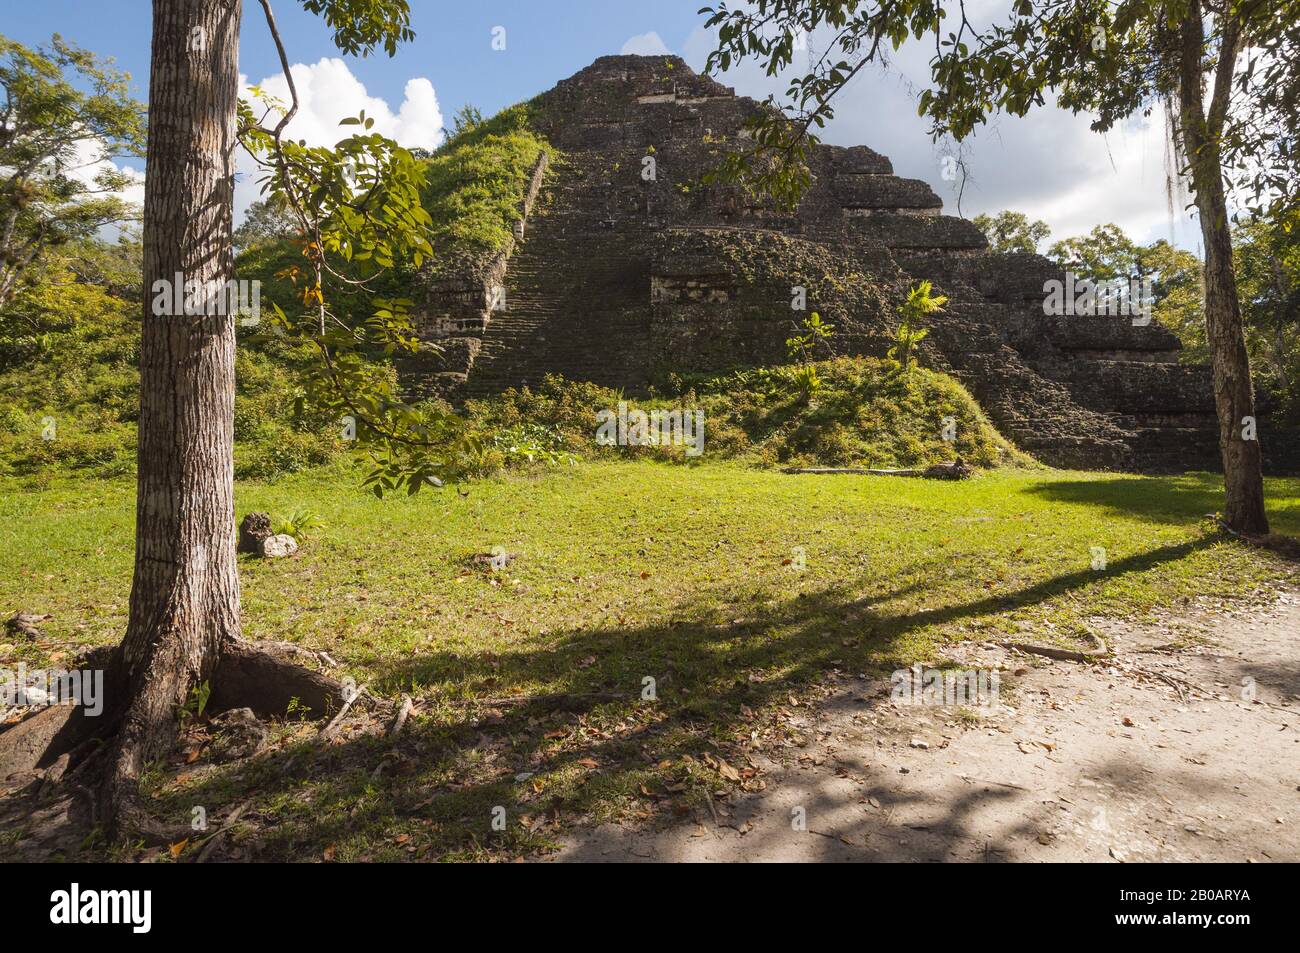 Guatemala, Parque Nacional Tikal, Mundo perdido, Pirámide del Mundo, 700 AC, más antiguo de Tikal, parcialmente excavado, arquitectura talud-tablero; Foto de stock